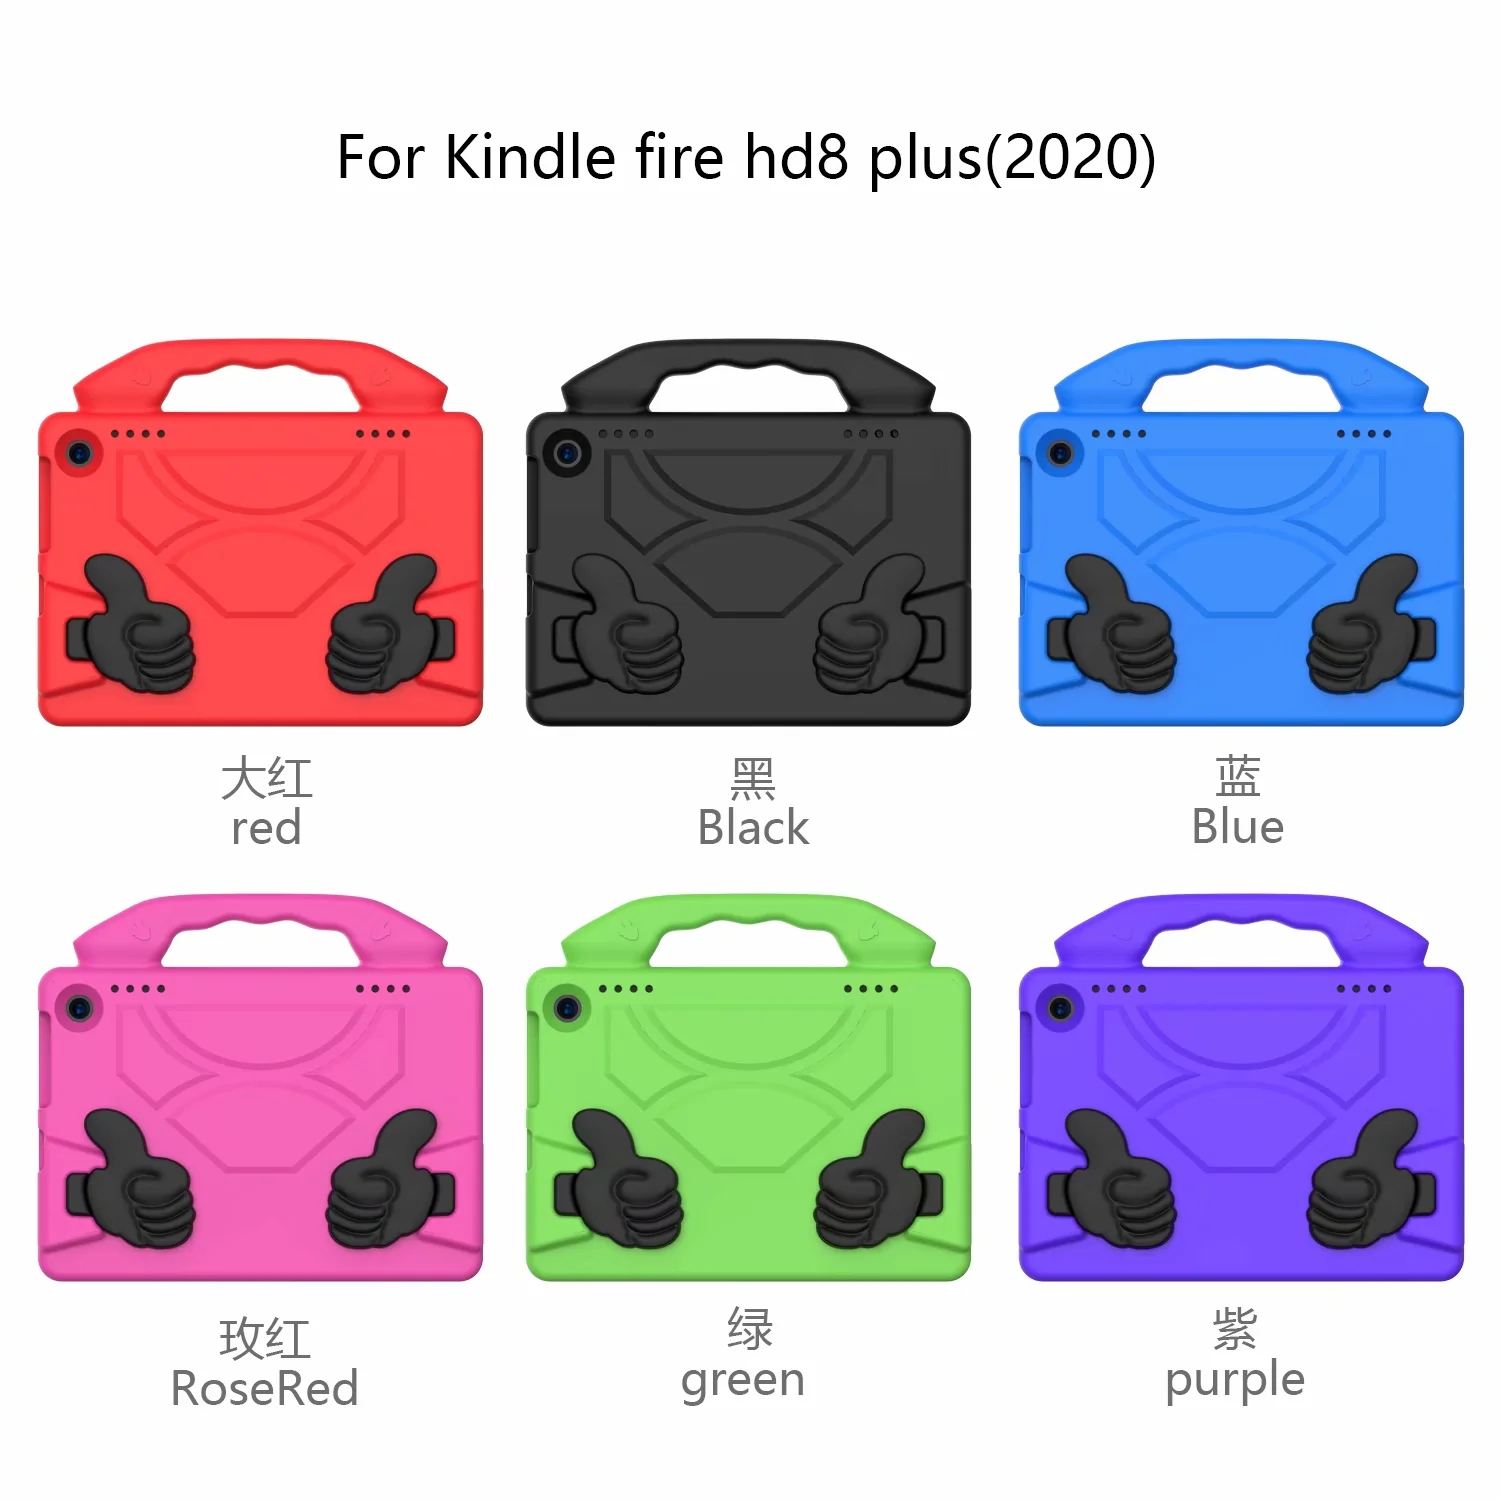 Ốp Lưng Chống Sốc Cho Máy Tính Bảng Amazon Kindle Fire Hd8 2020 / Hd 8 Plus 2020 8.0 Inch